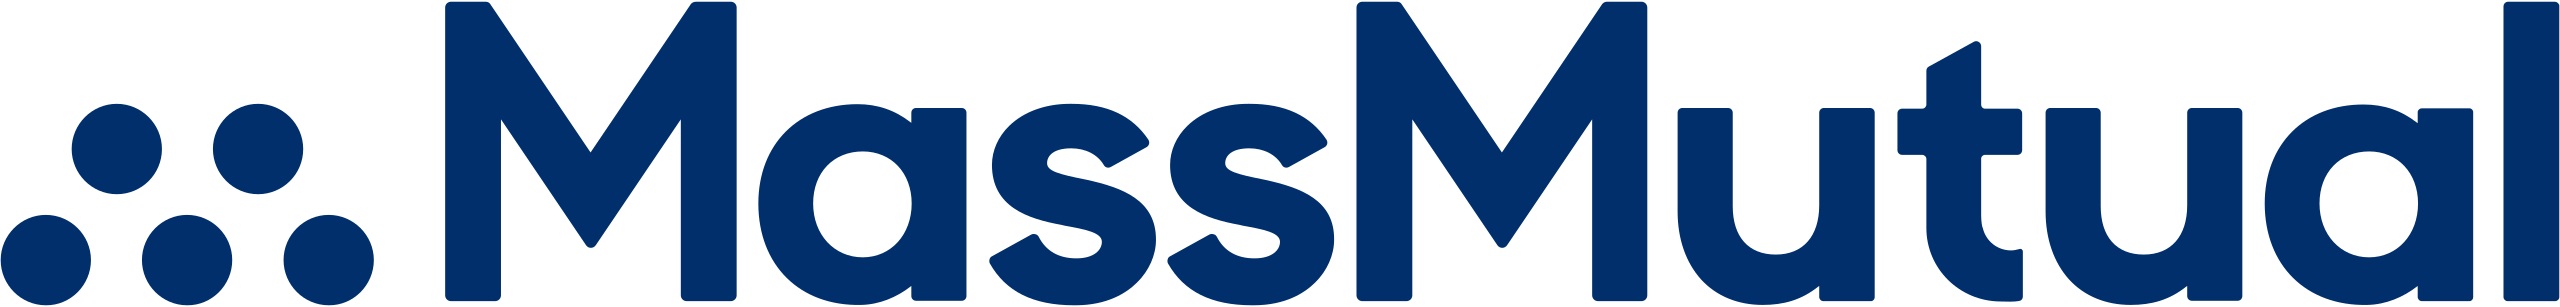 MassMutual_logo